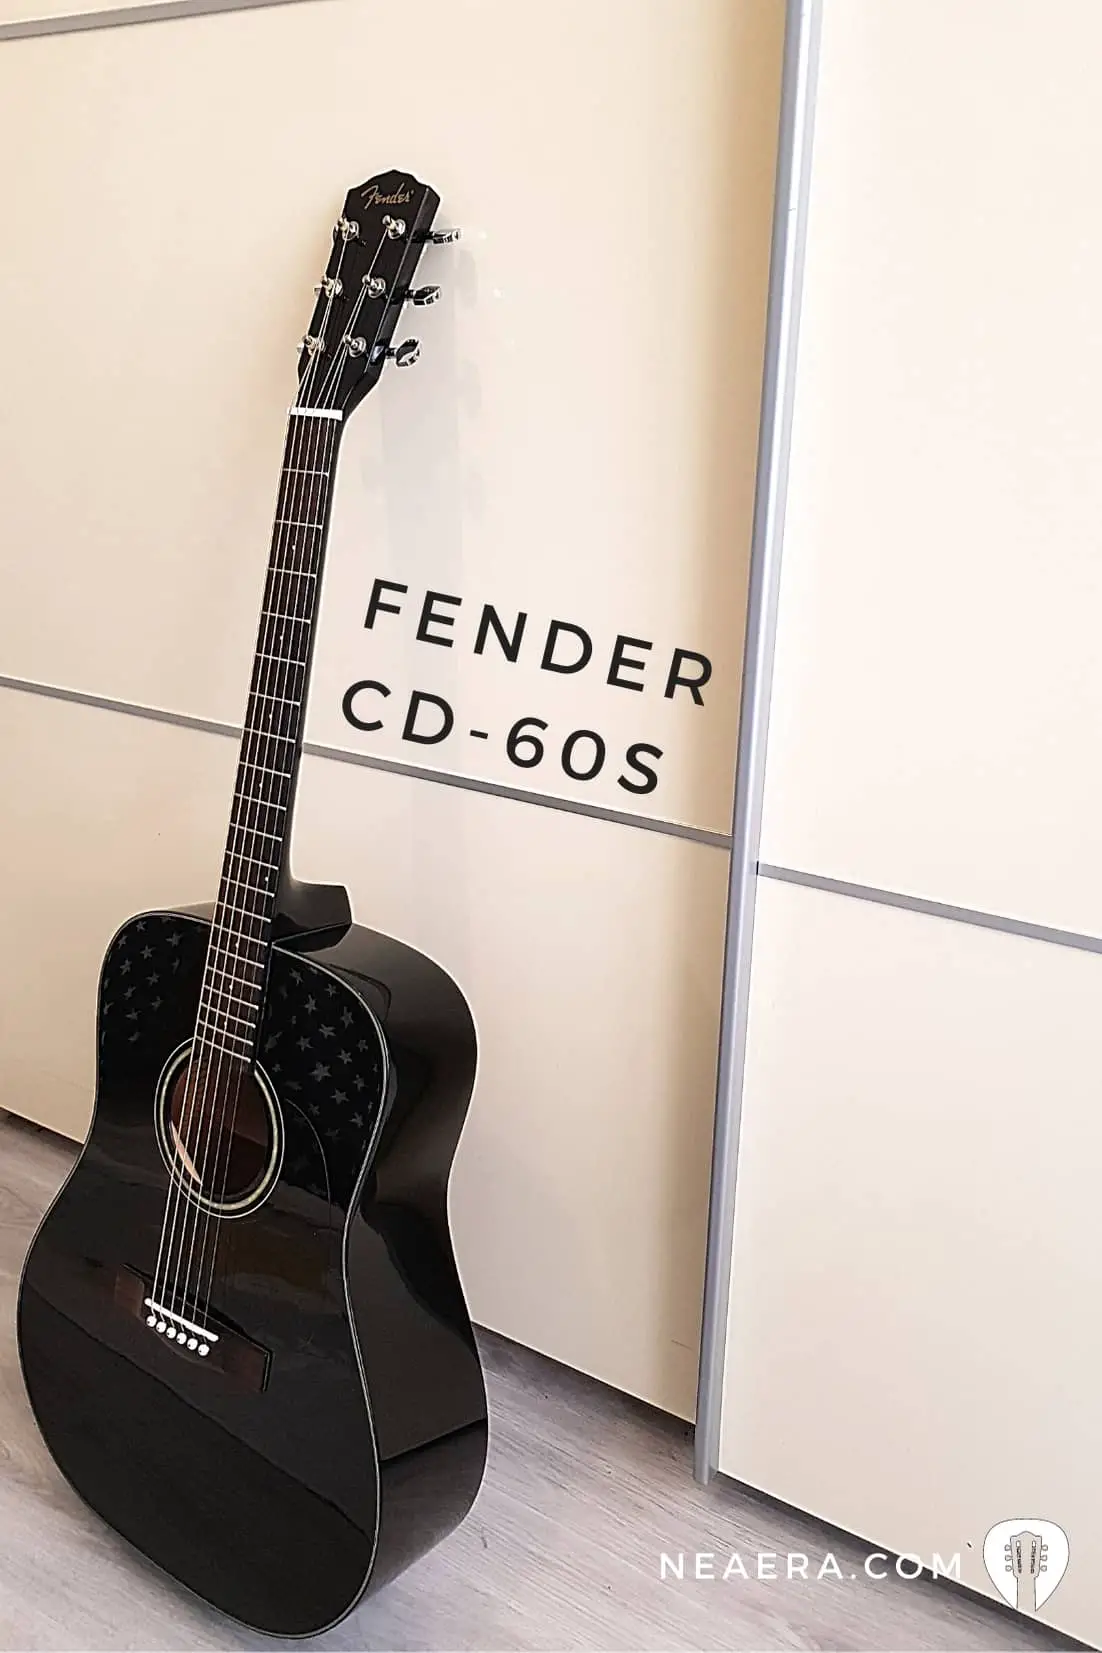 Mellor guitarra acústica barata para principiantes: Fender CD-60S